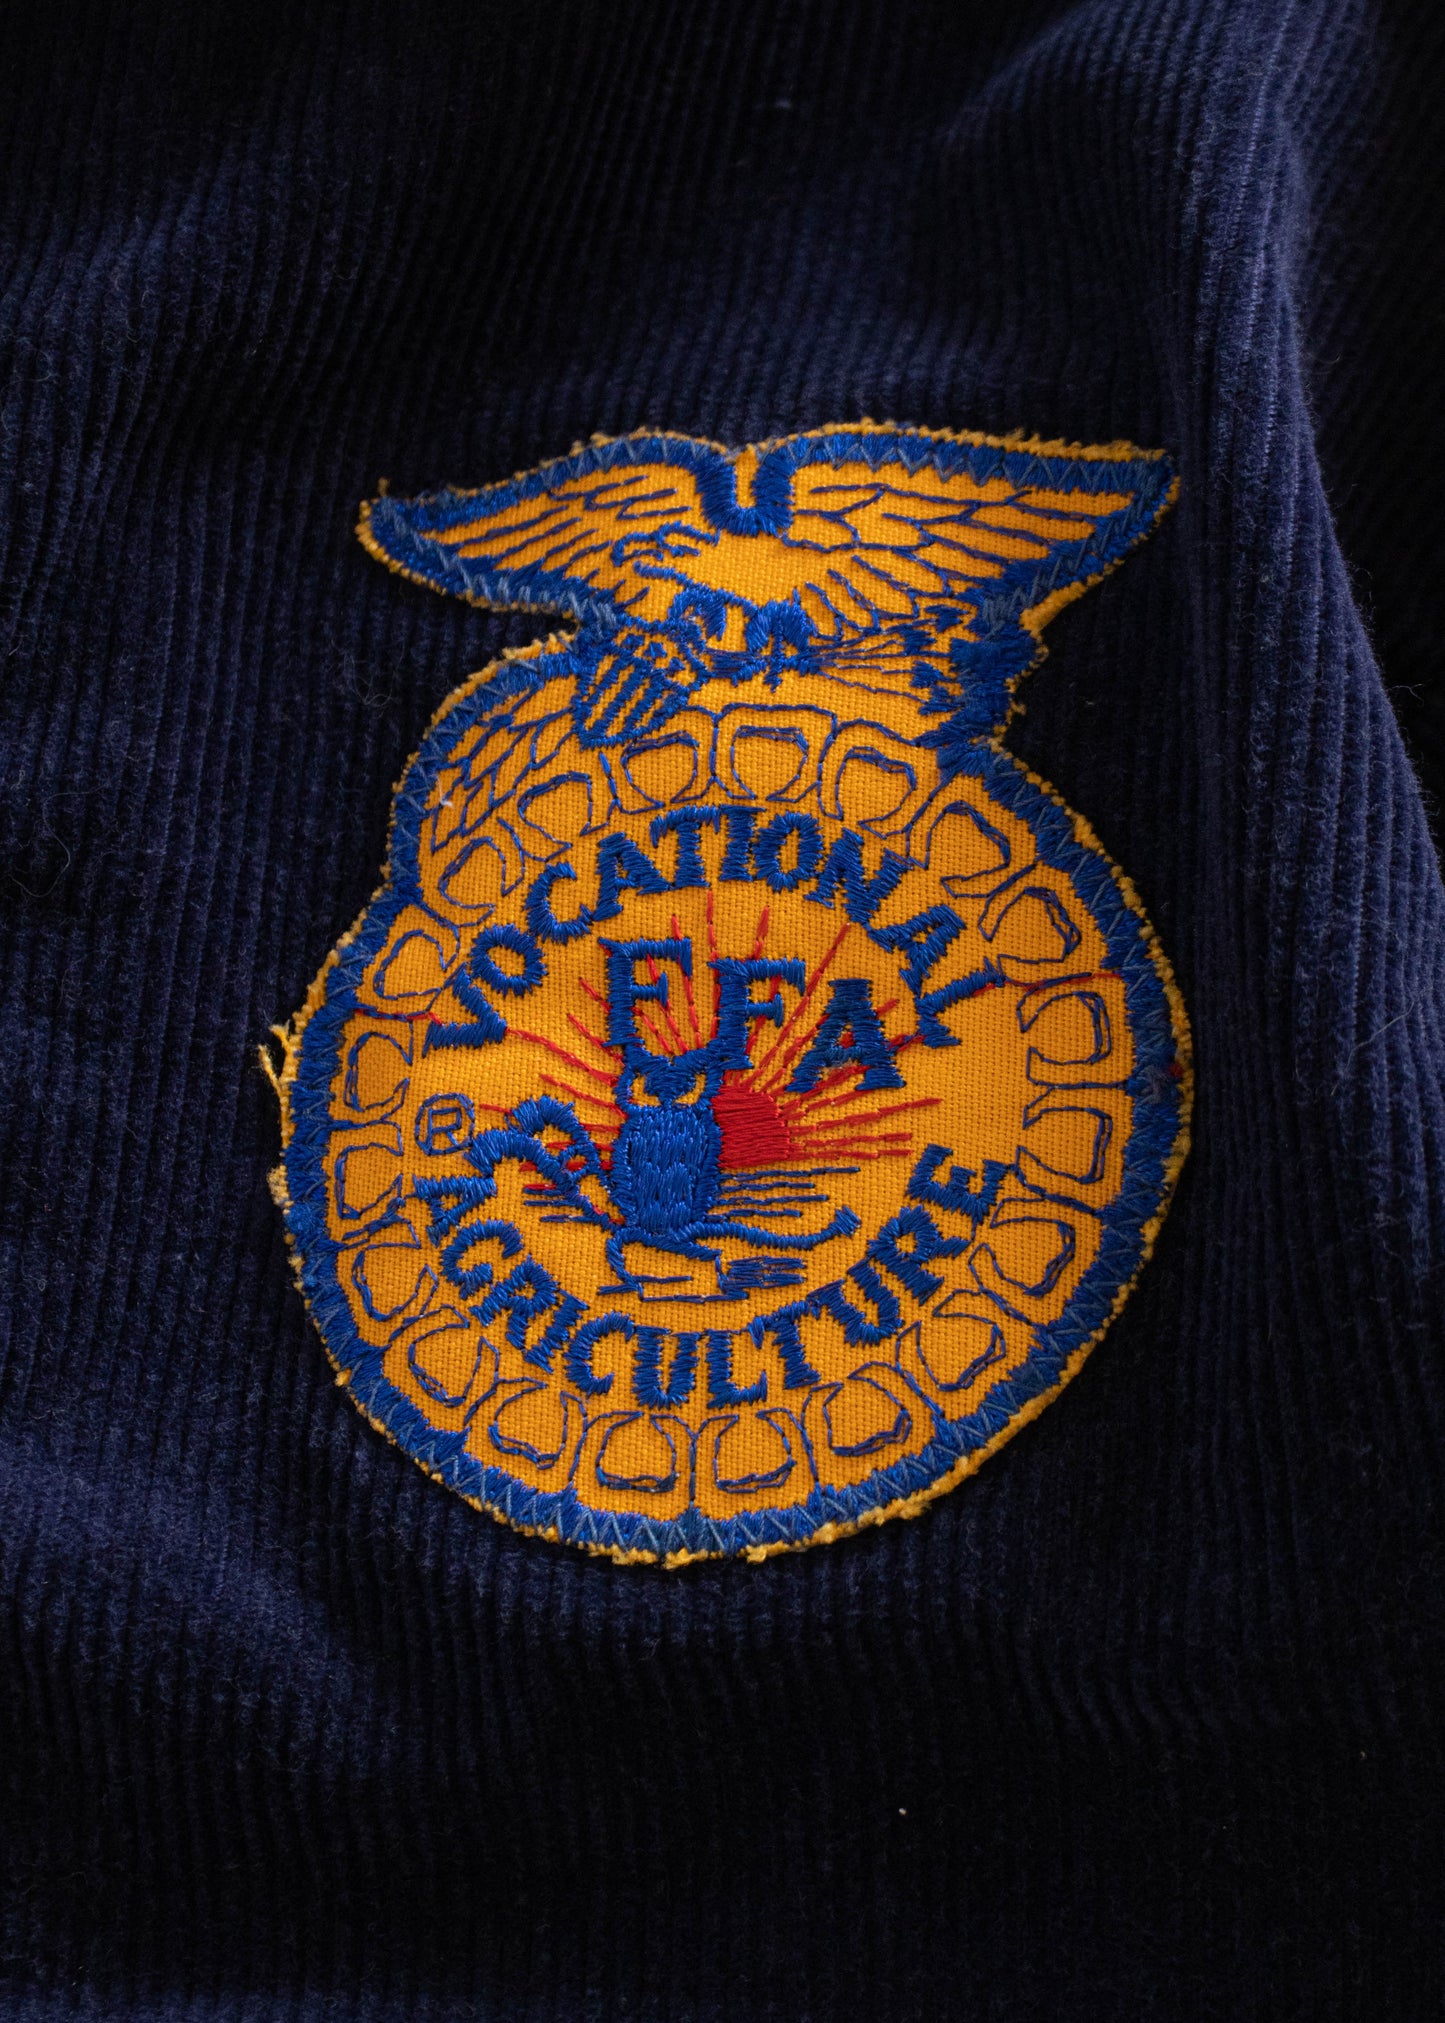 1980s FFA Ohio Jacket Size XS/S